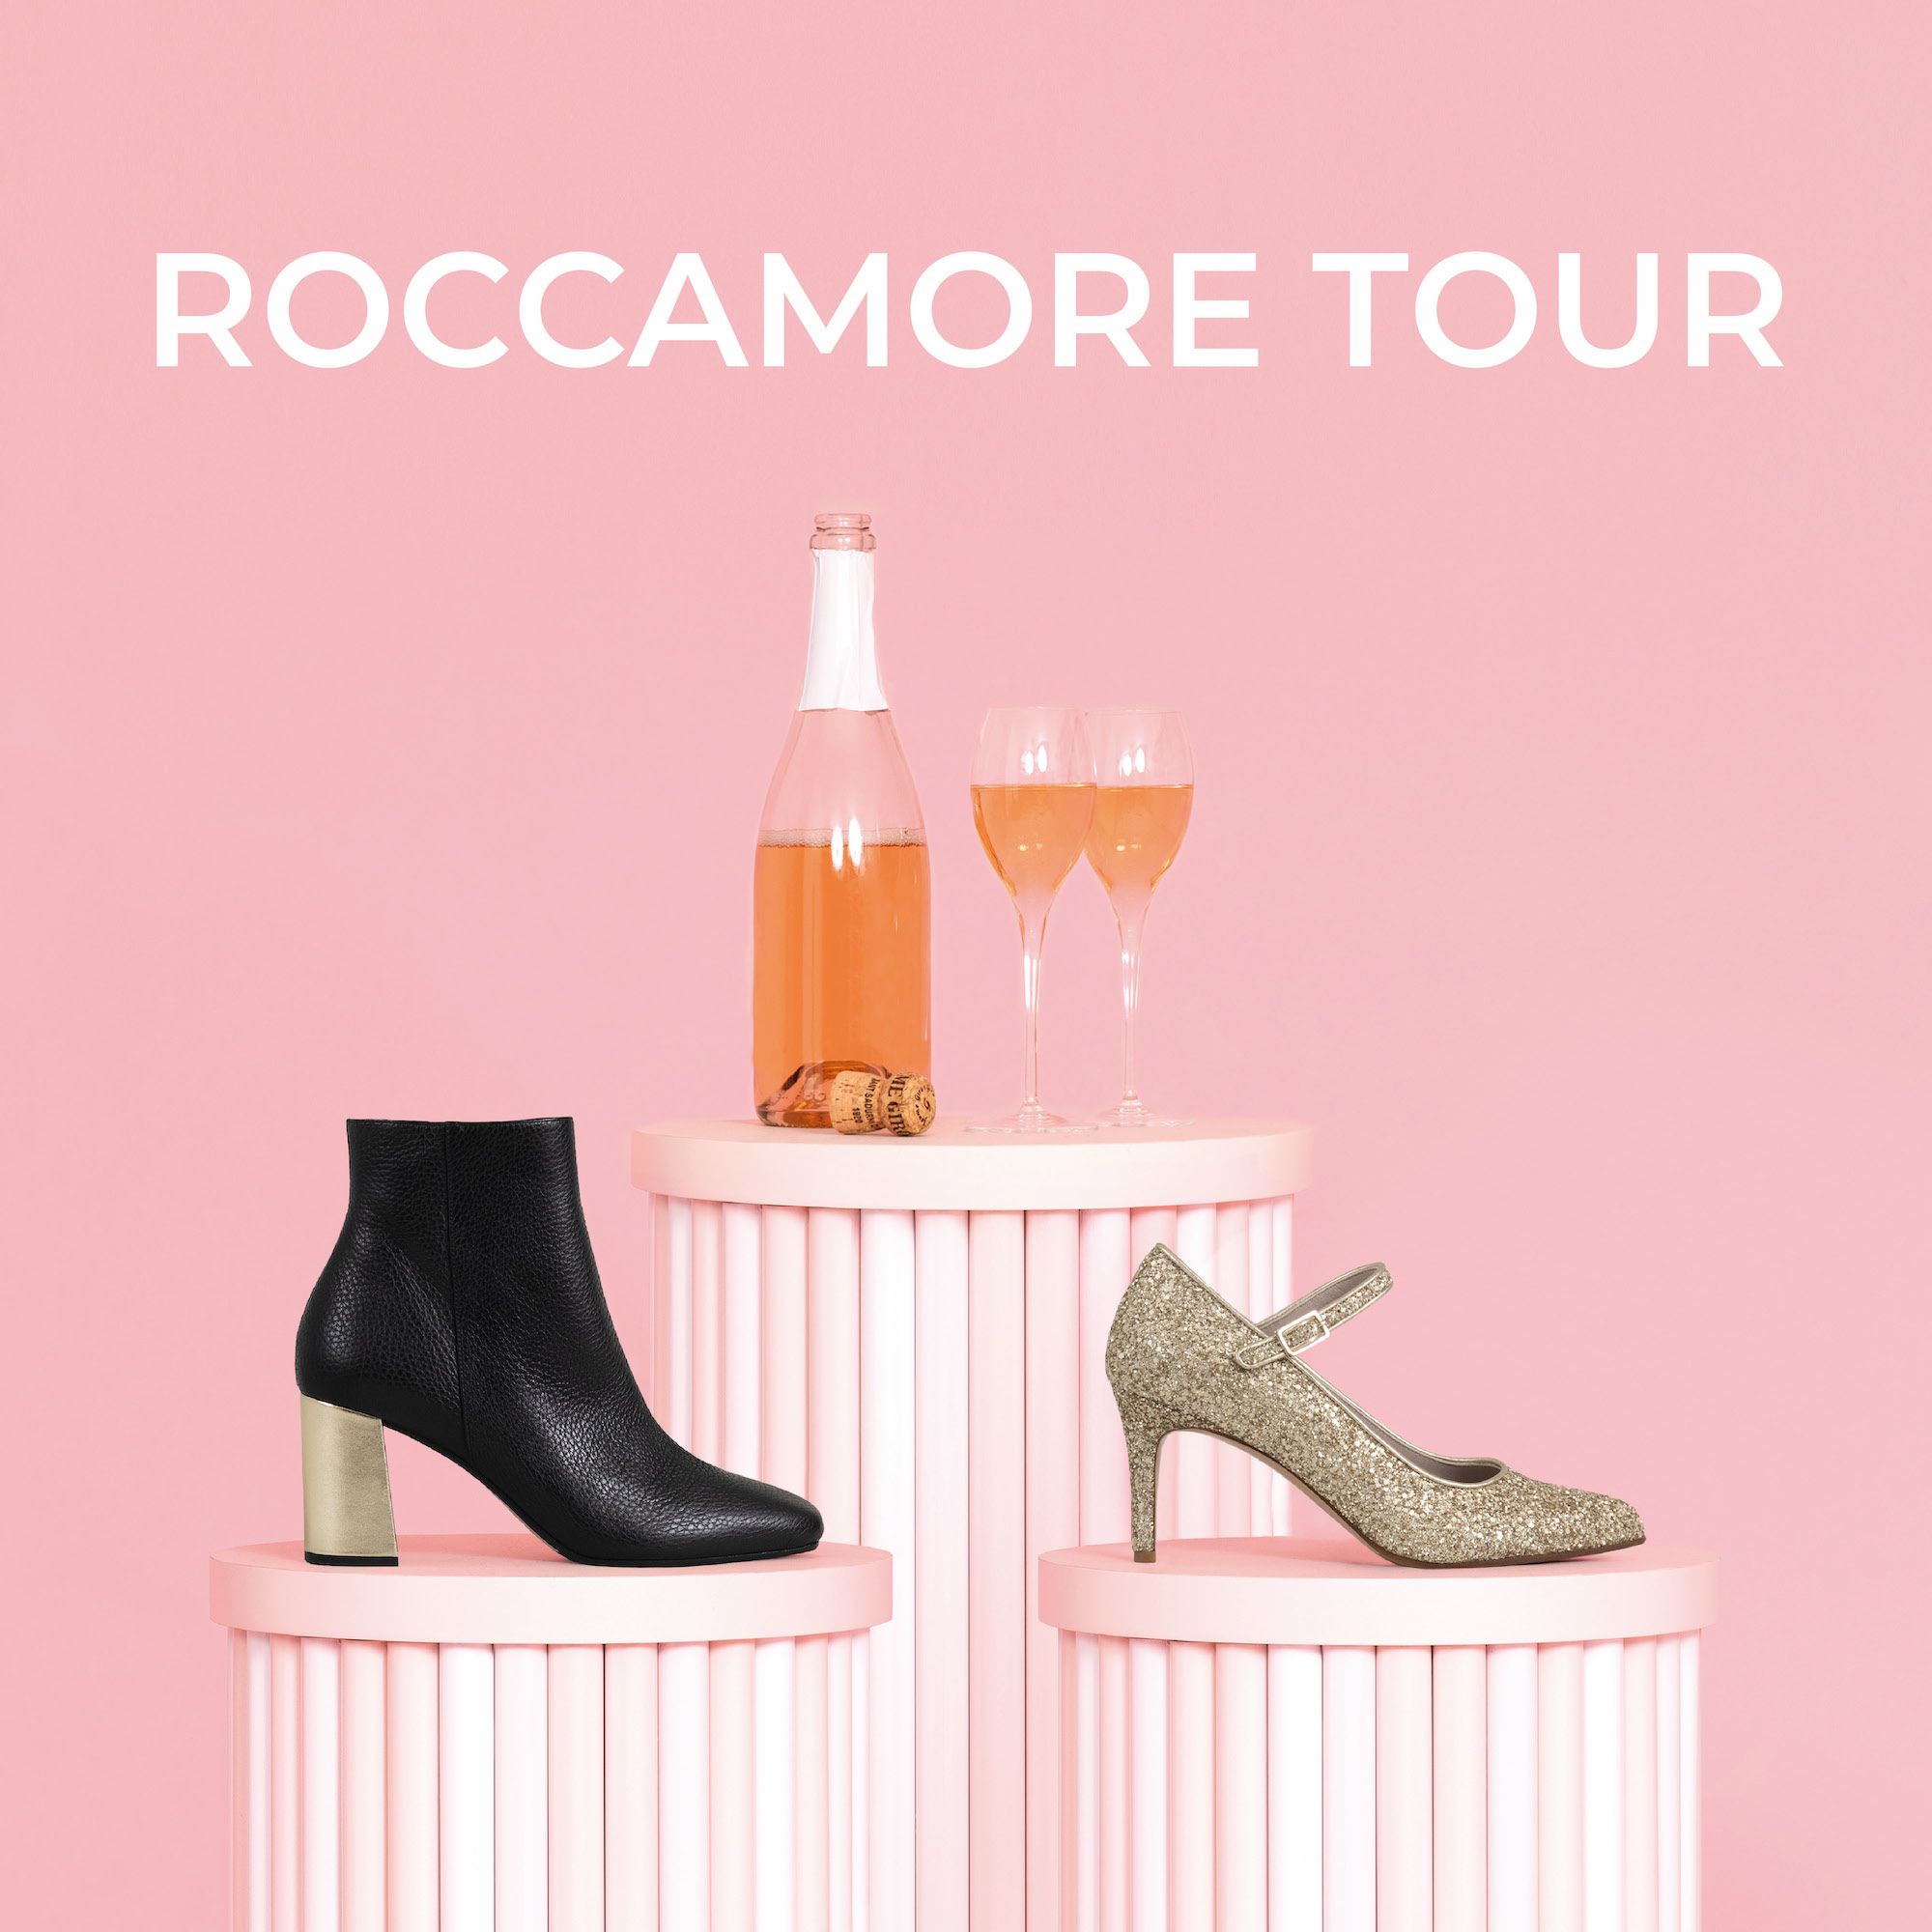 Roccamore tour